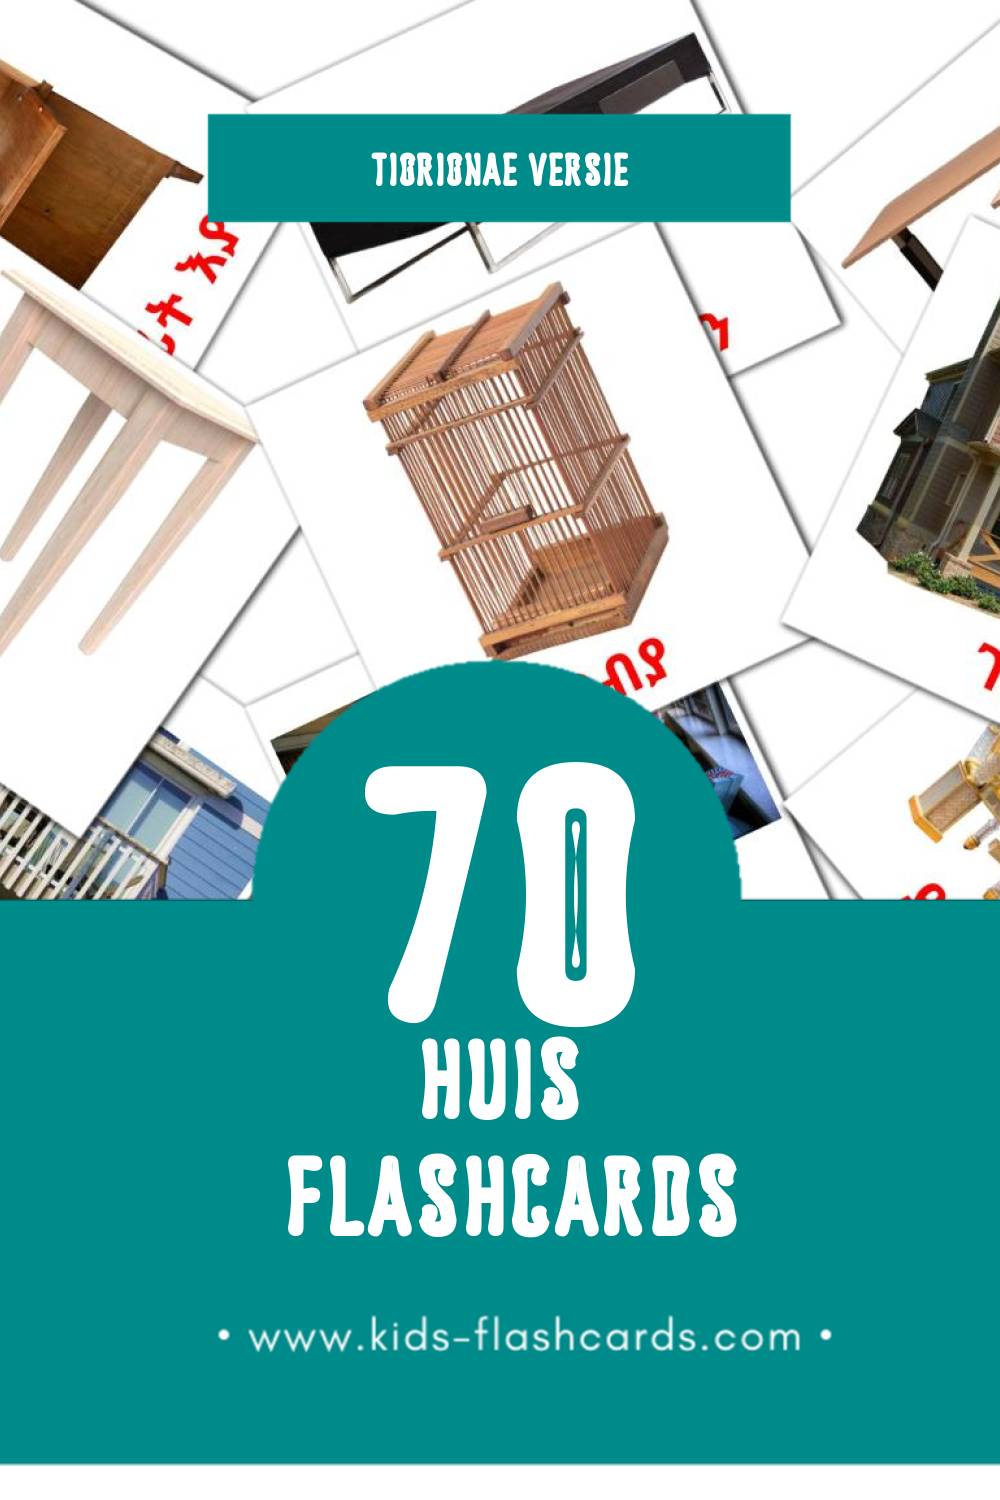 Visuele ገዛ Flashcards voor Kleuters (70 kaarten in het Tigrigna)